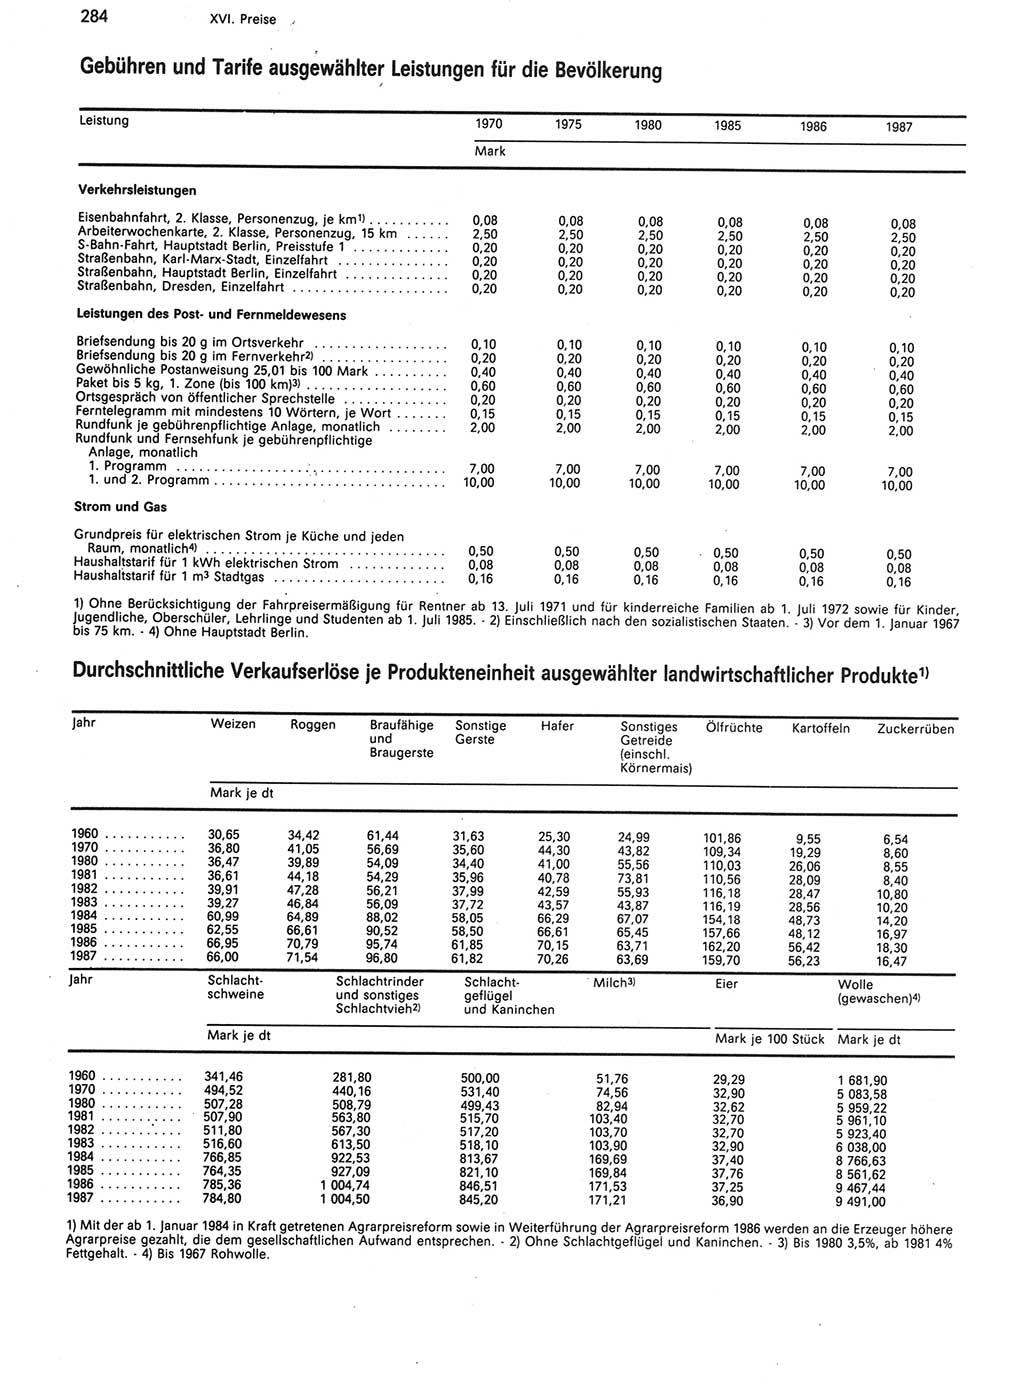 Statistisches Jahrbuch der Deutschen Demokratischen Republik (DDR) 1988, Seite 284 (Stat. Jb. DDR 1988, S. 284)